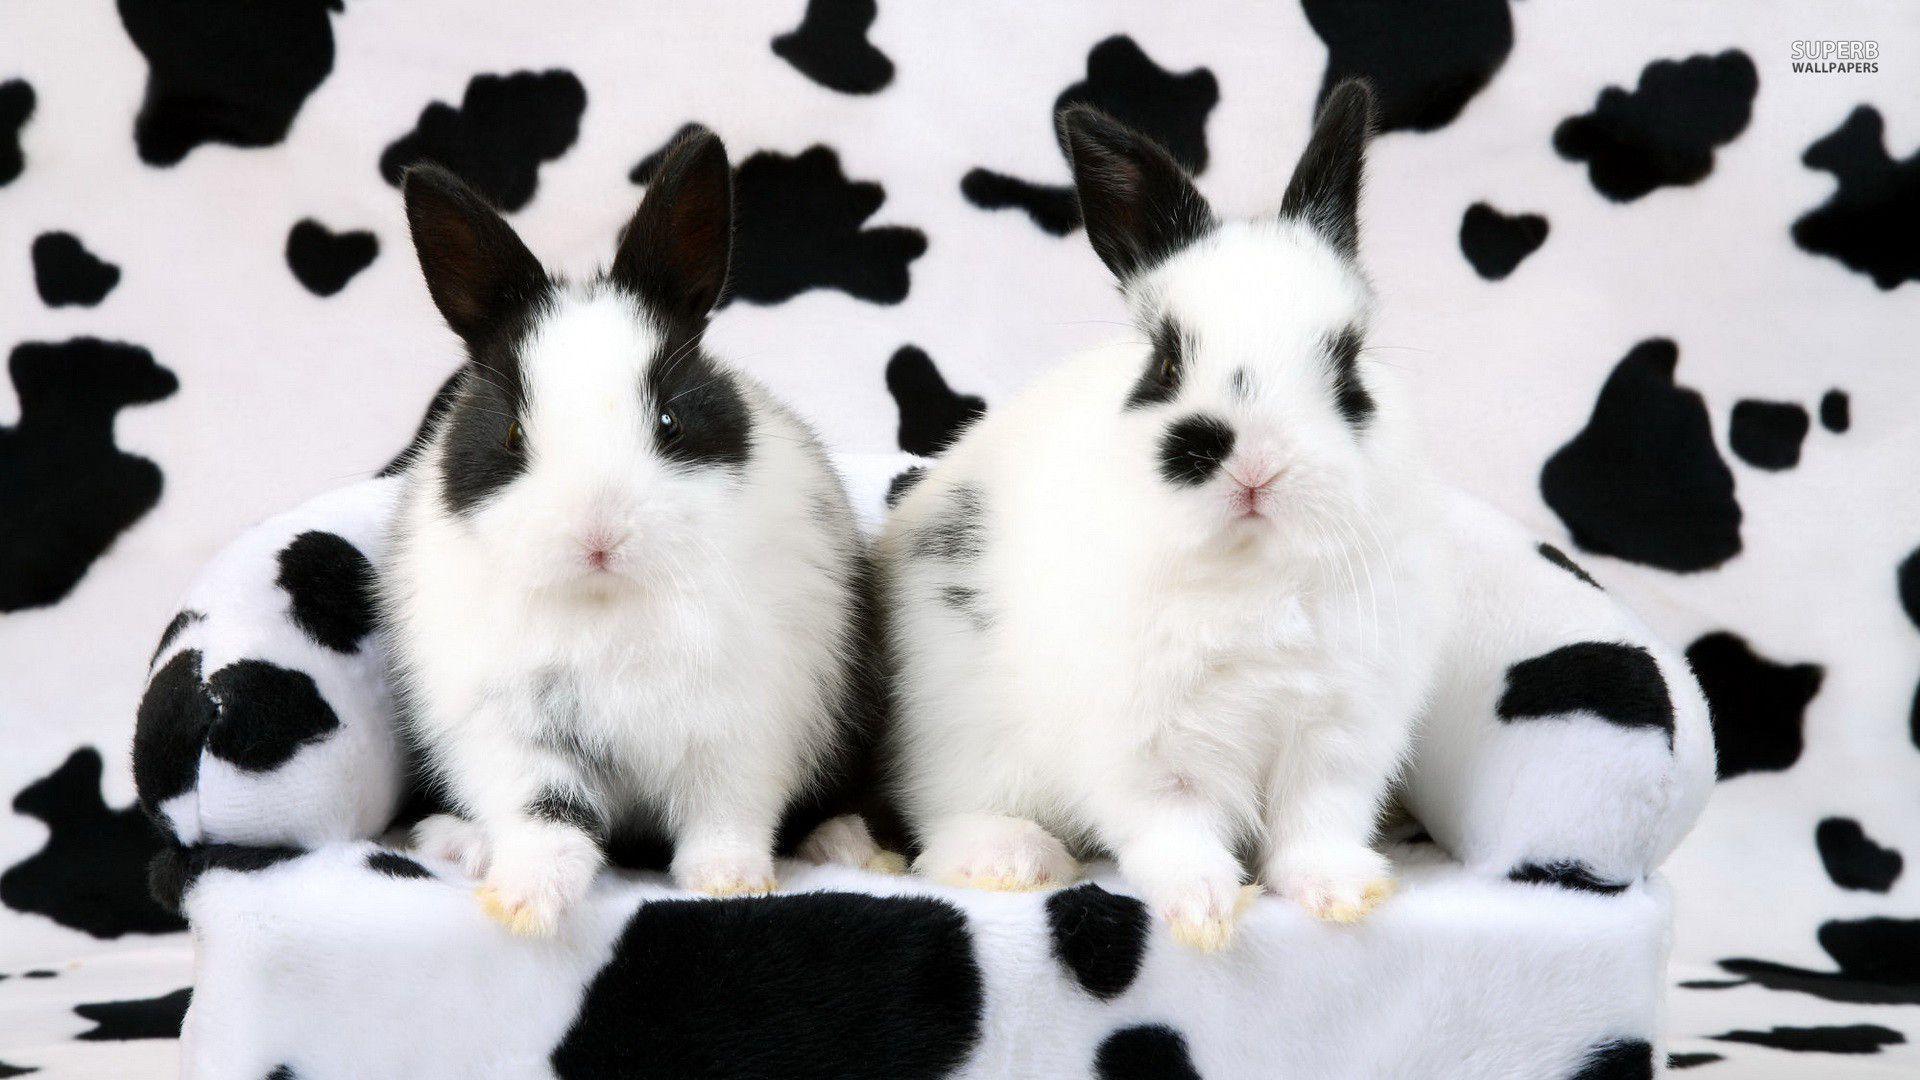 Black And White Rabbits 20876